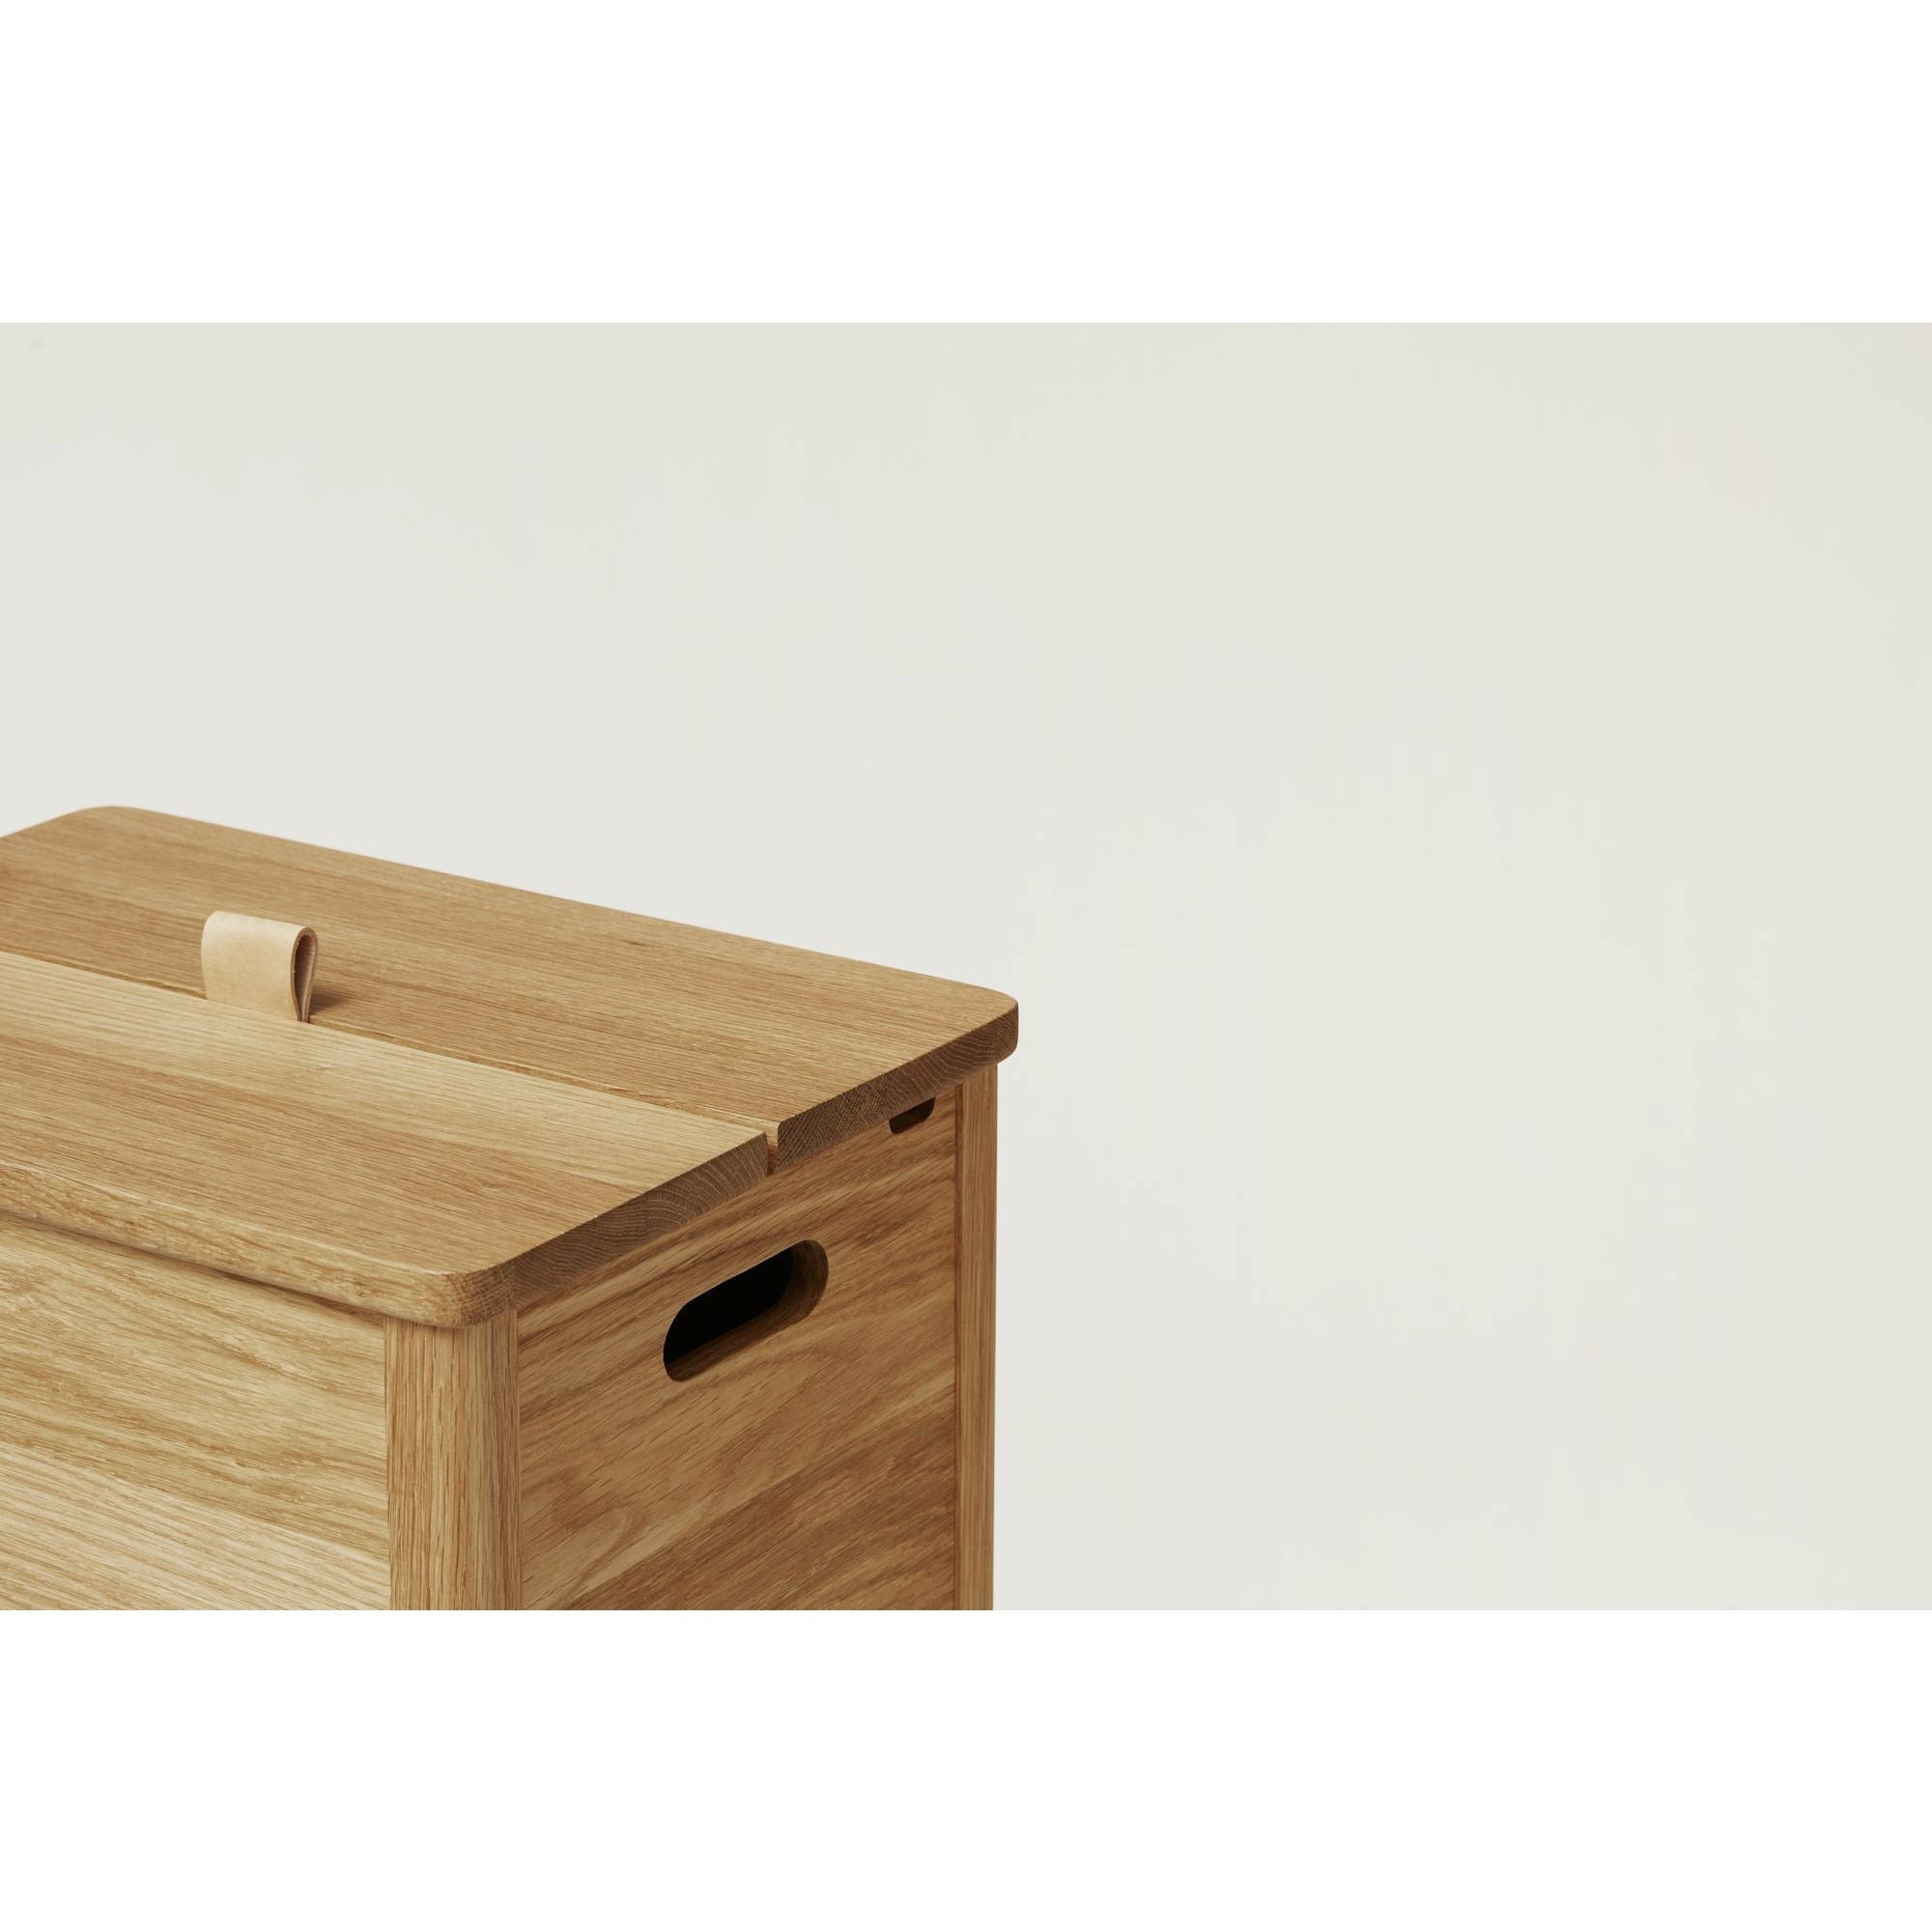 Form & Refine A Line Laundry Box. Oak